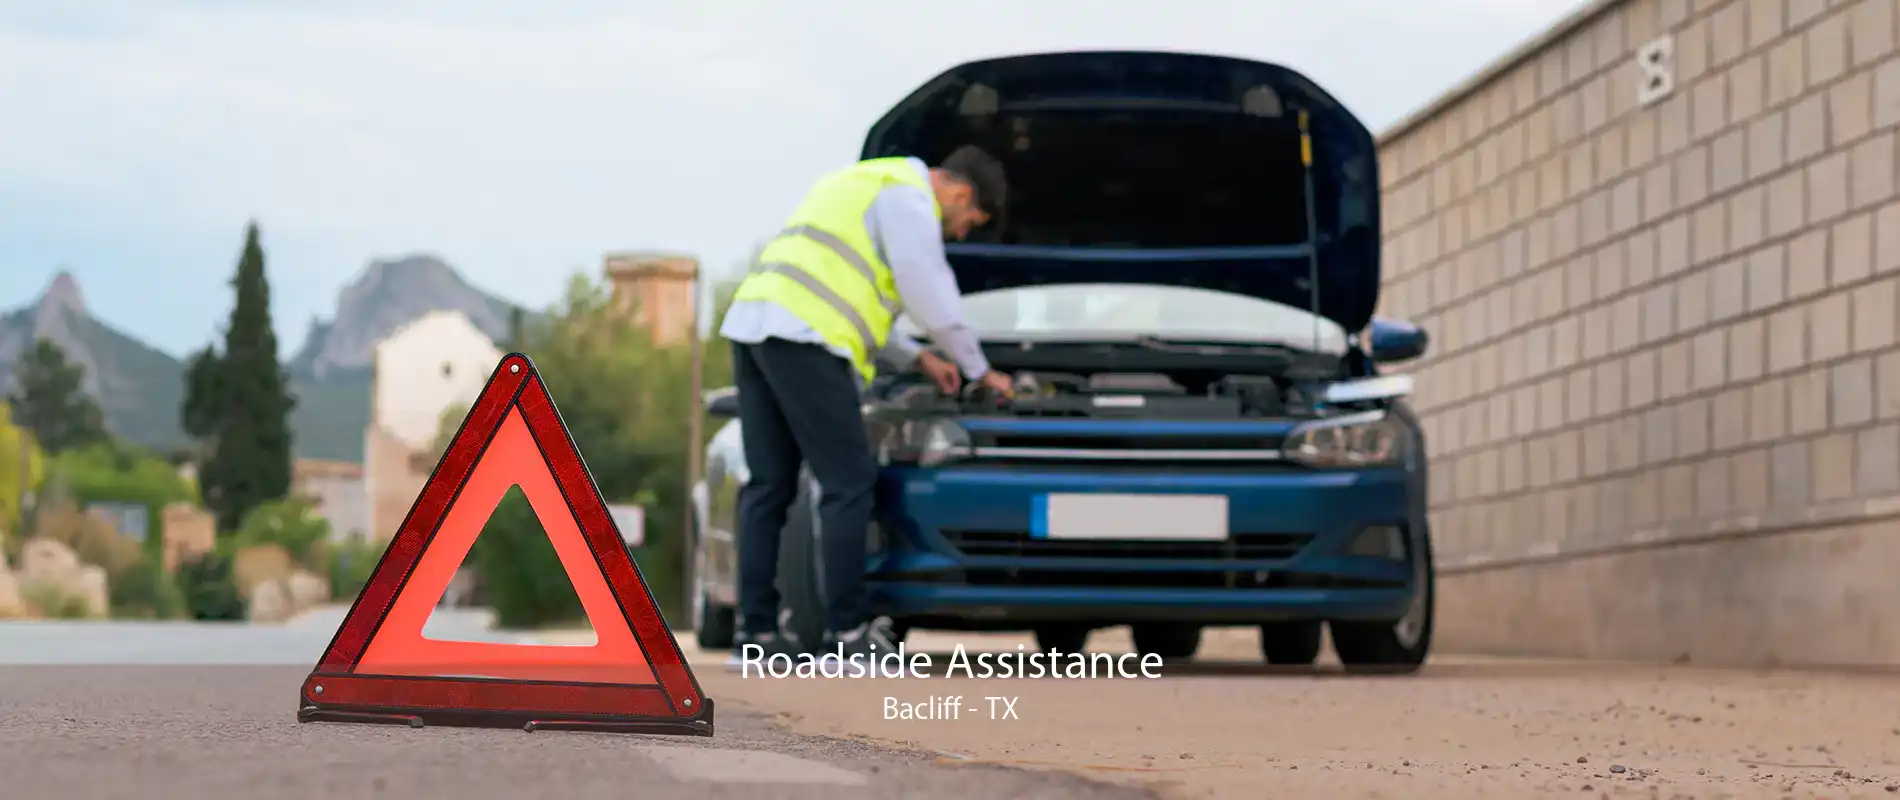 Roadside Assistance Bacliff - TX